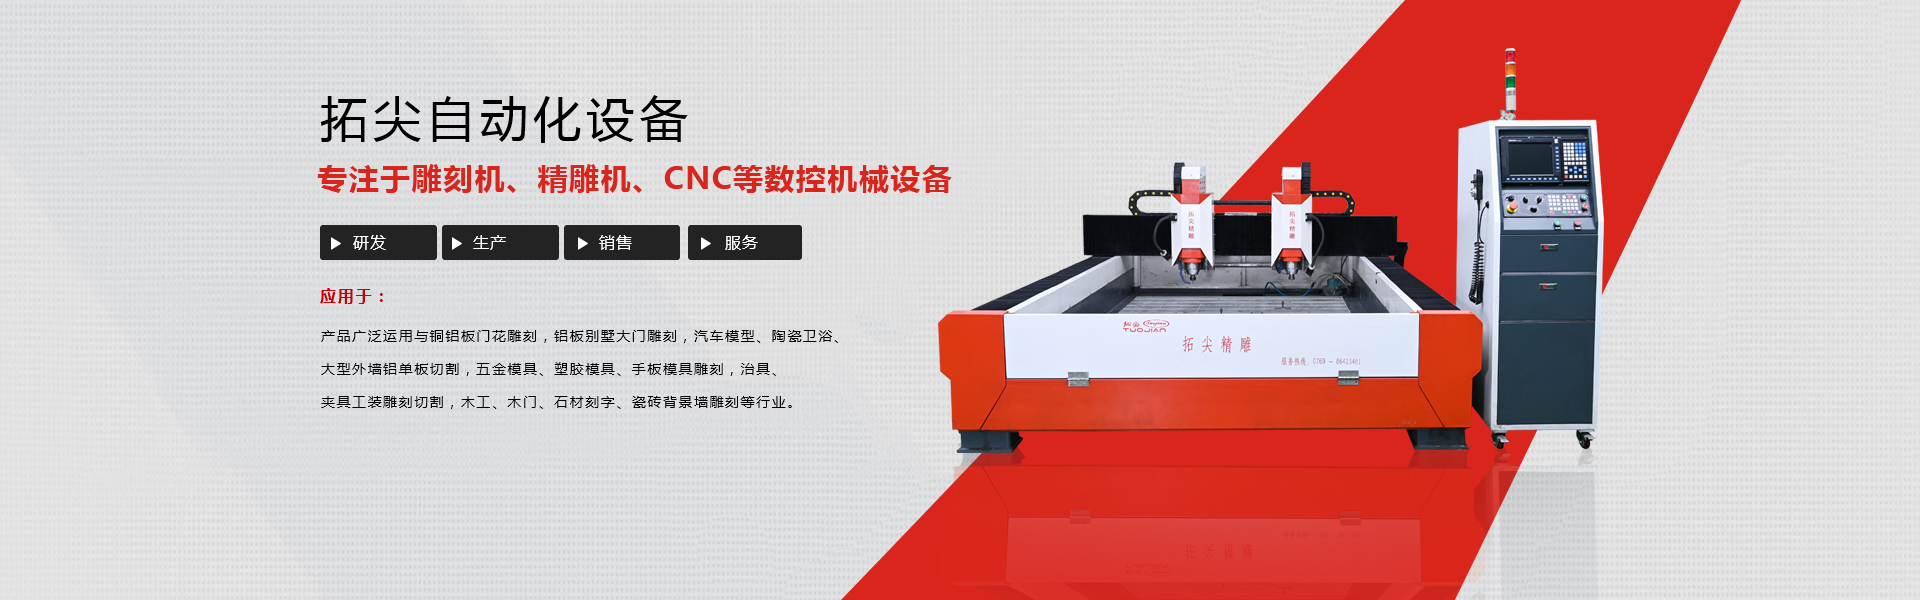 深圳市bat365中国集团自动化设备有限公司